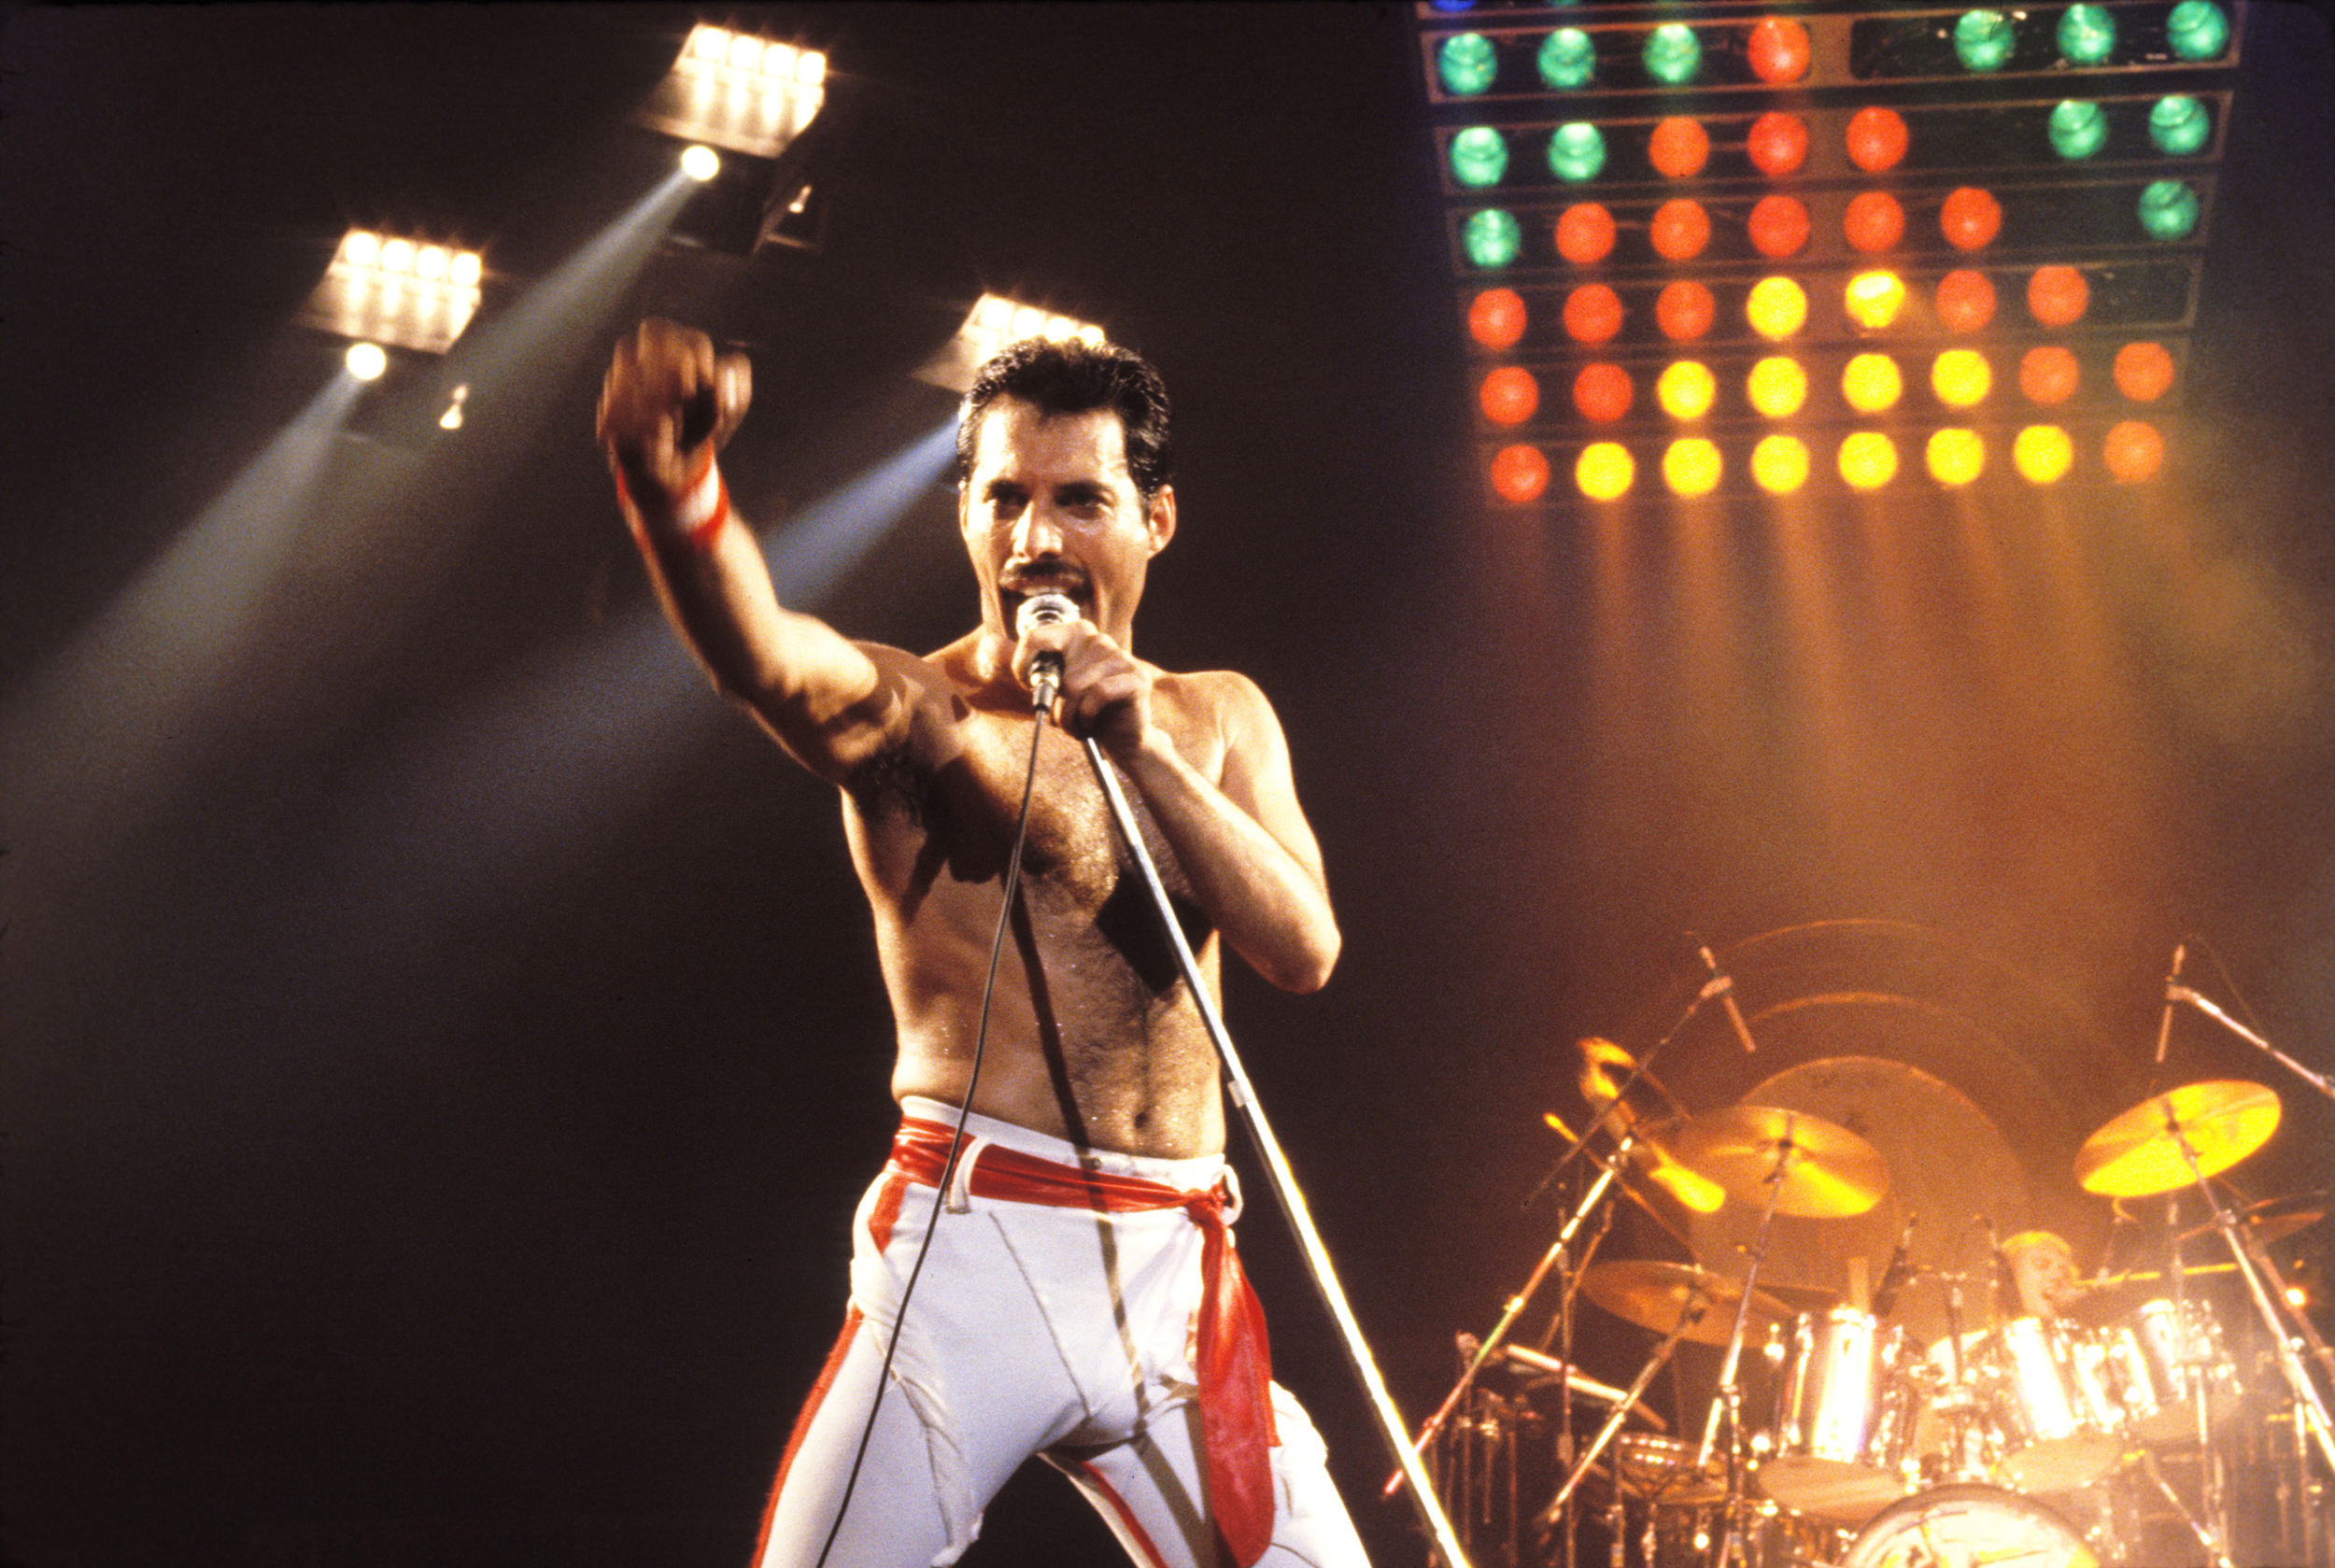 Freddie Mercury Kimdir? Nasıl Öldü? Freddie Mercury'nin son hali